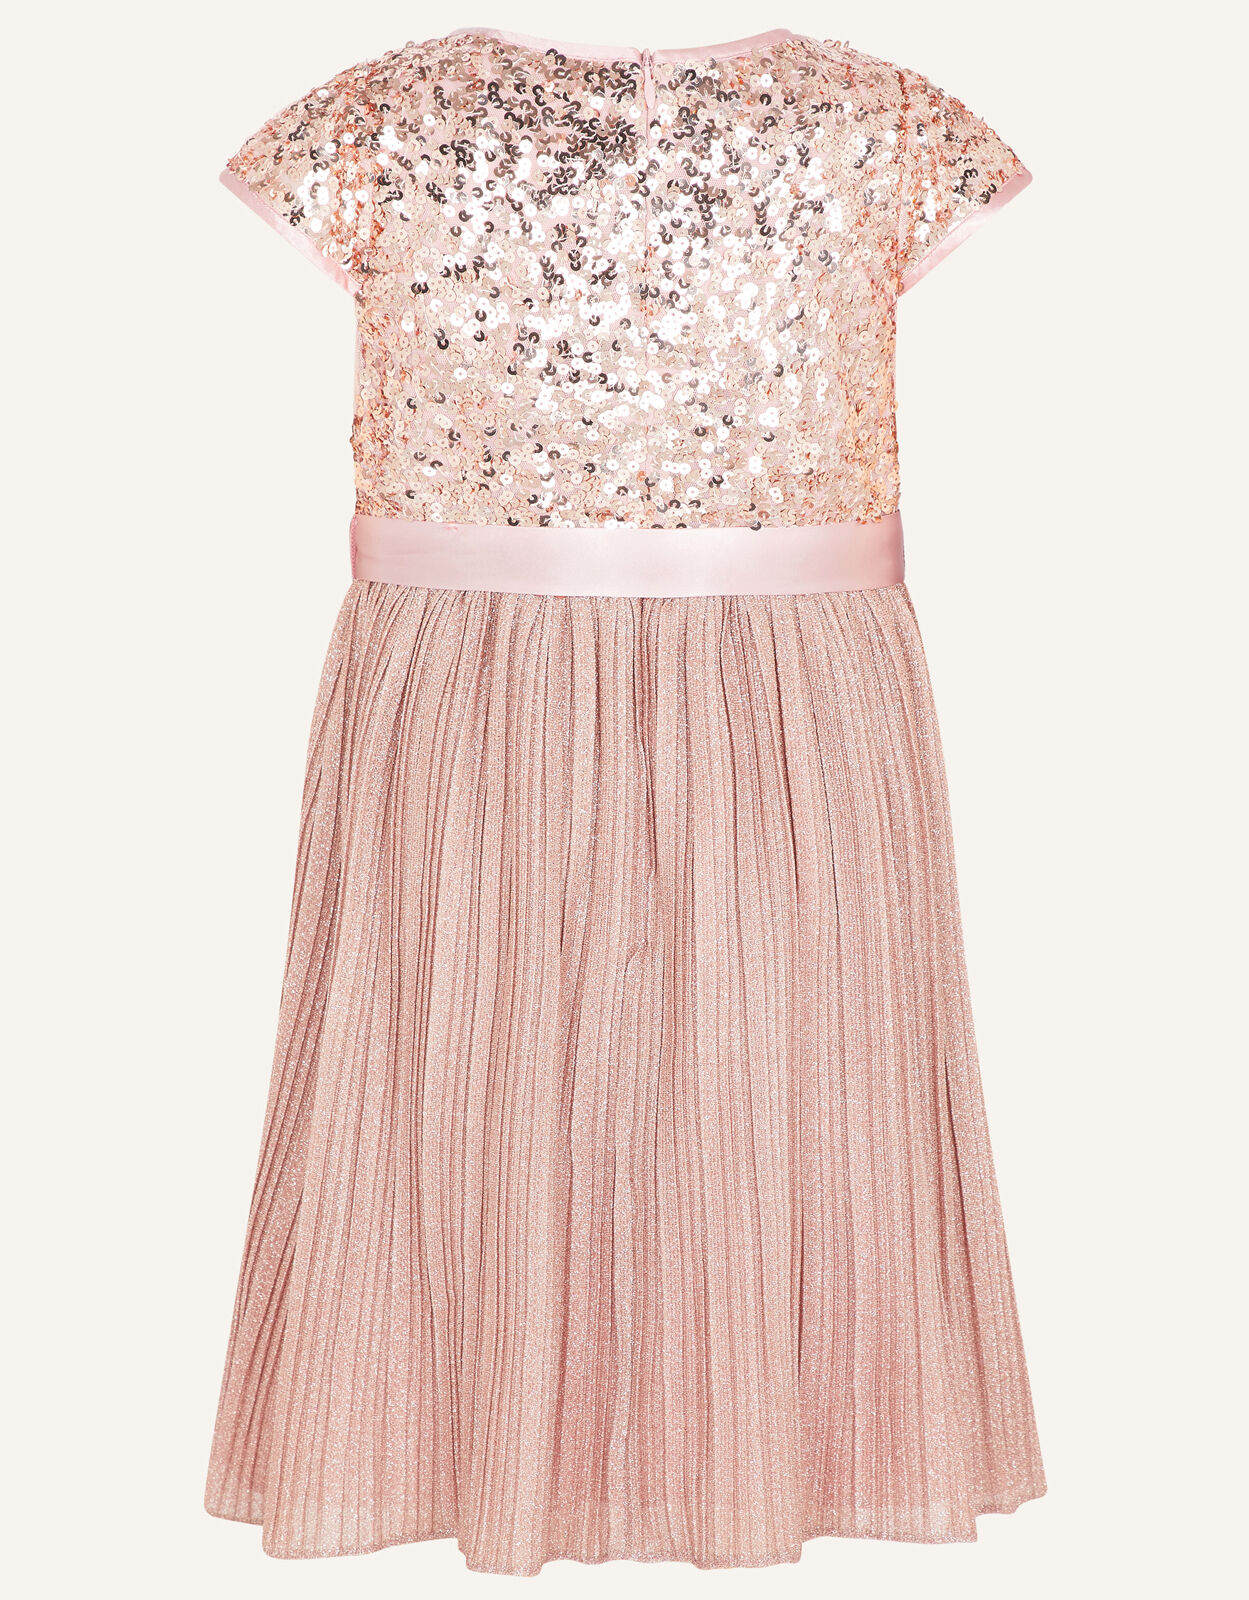 Gilded Rose Sequin Dress | Girls ...